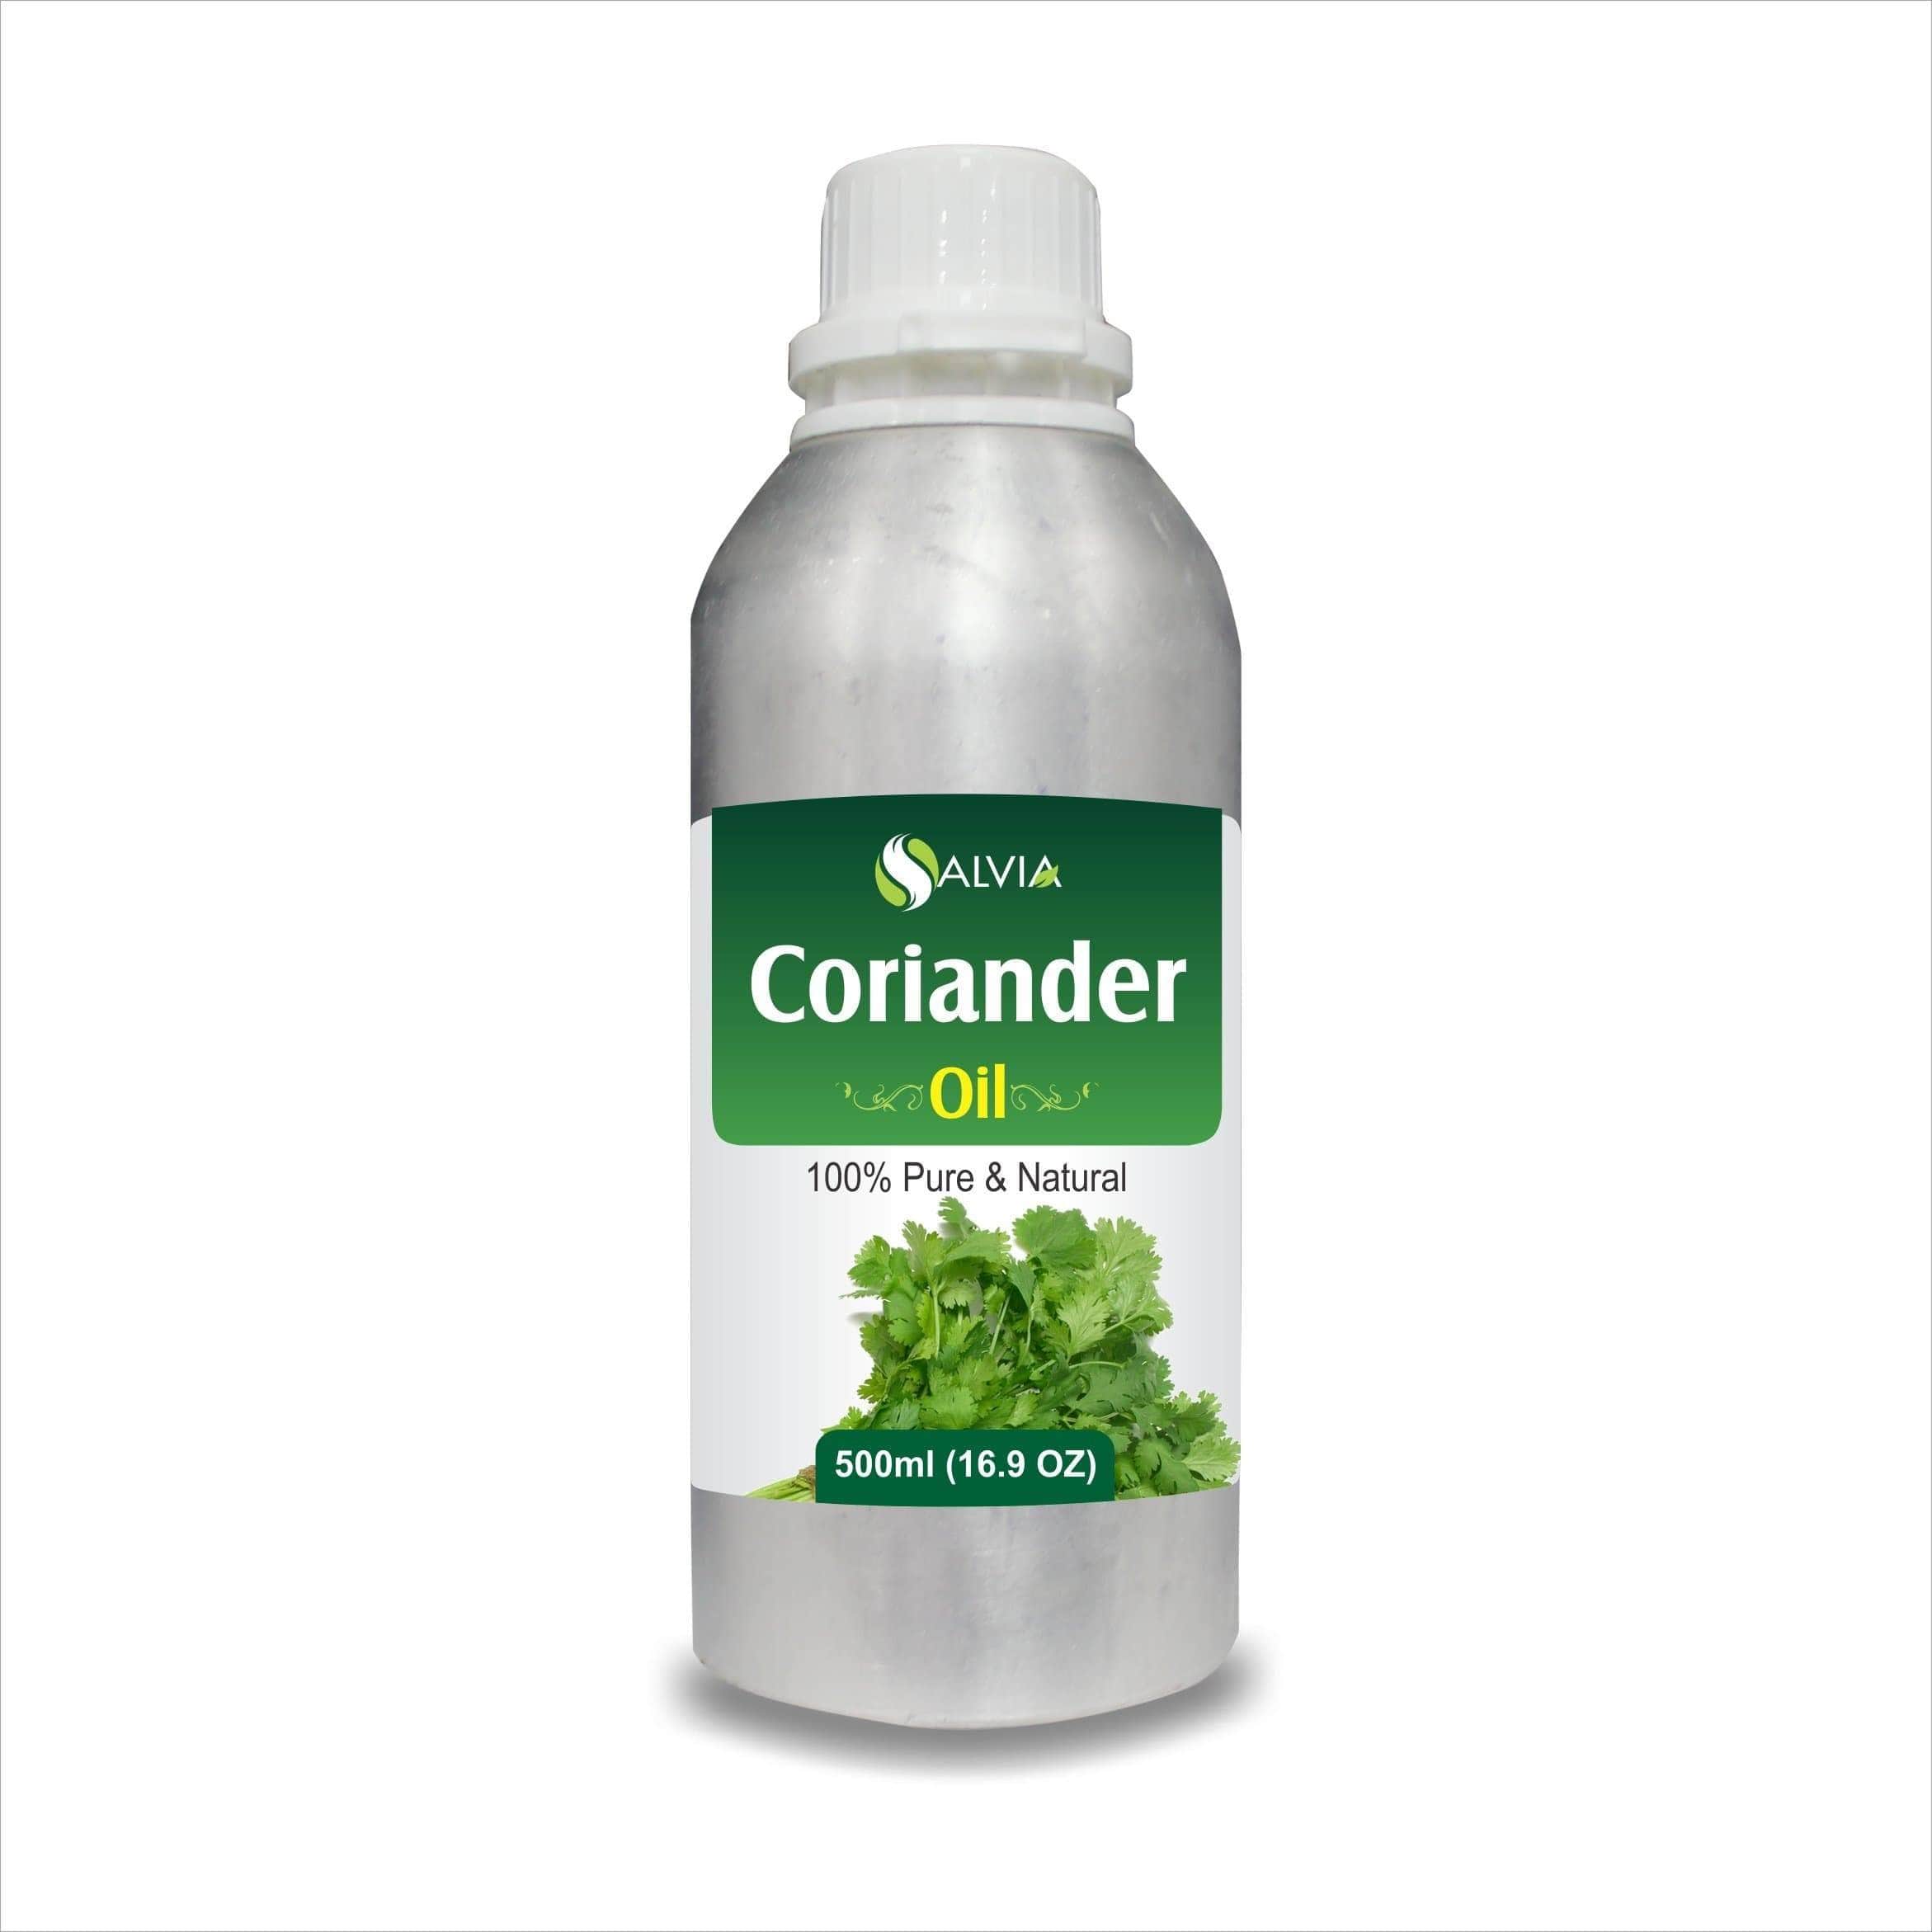 coriander oil side effects